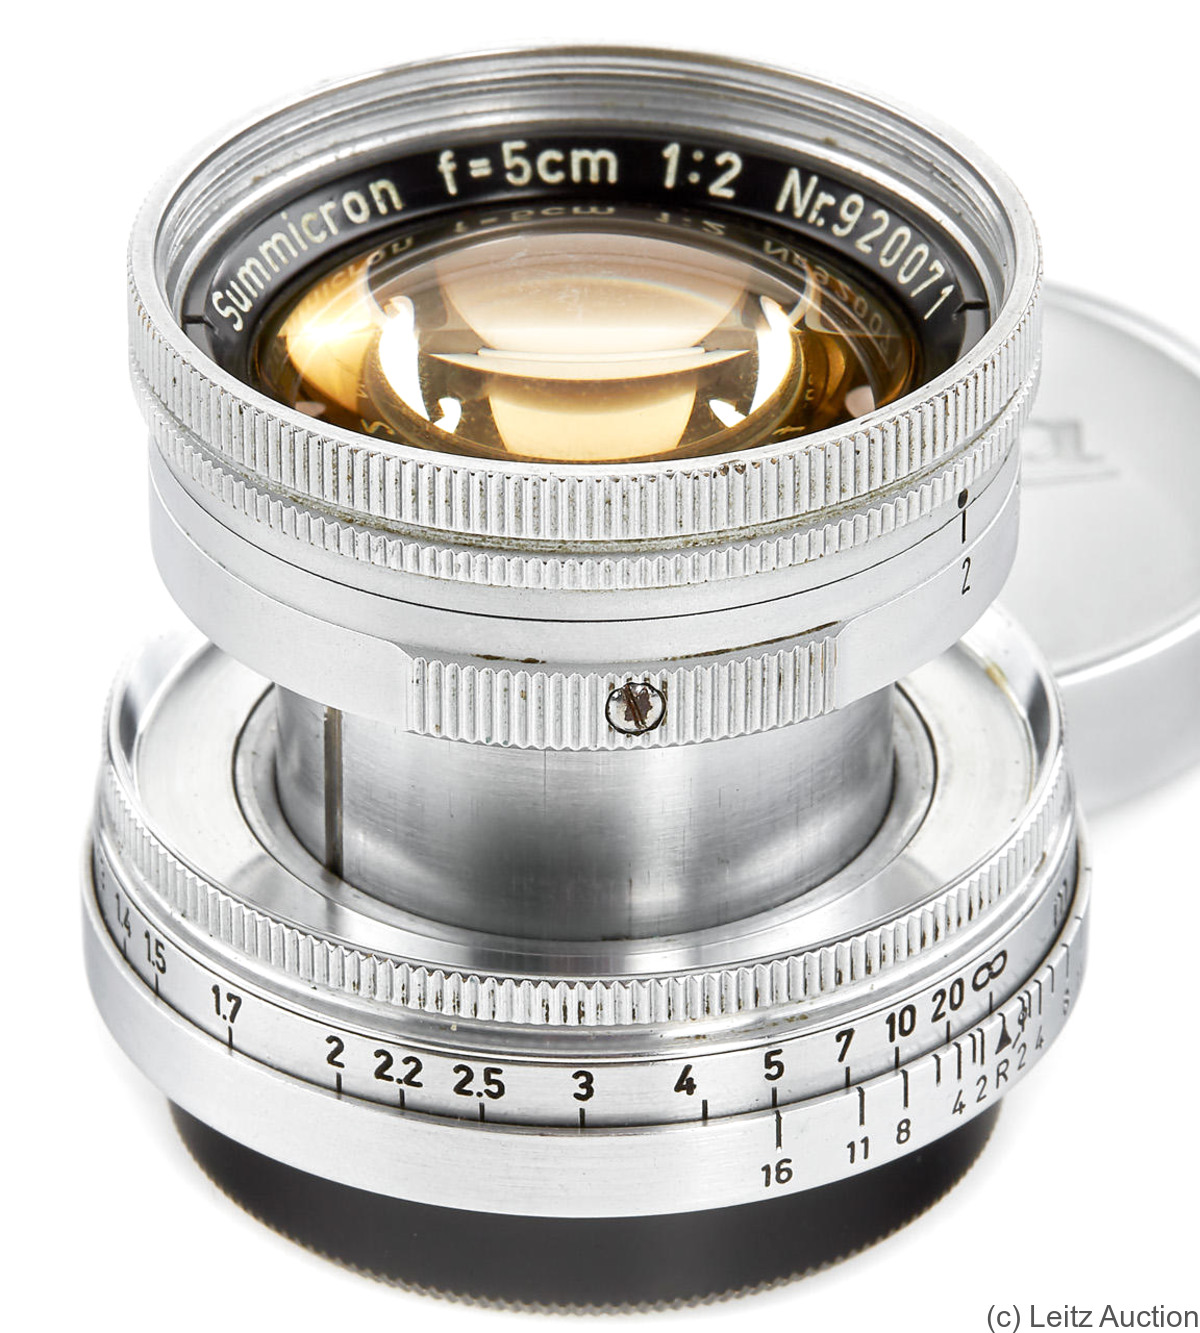 Leitz: 50mm (5cm) f2 Summicron (SM, collapsible, Thorium) camera